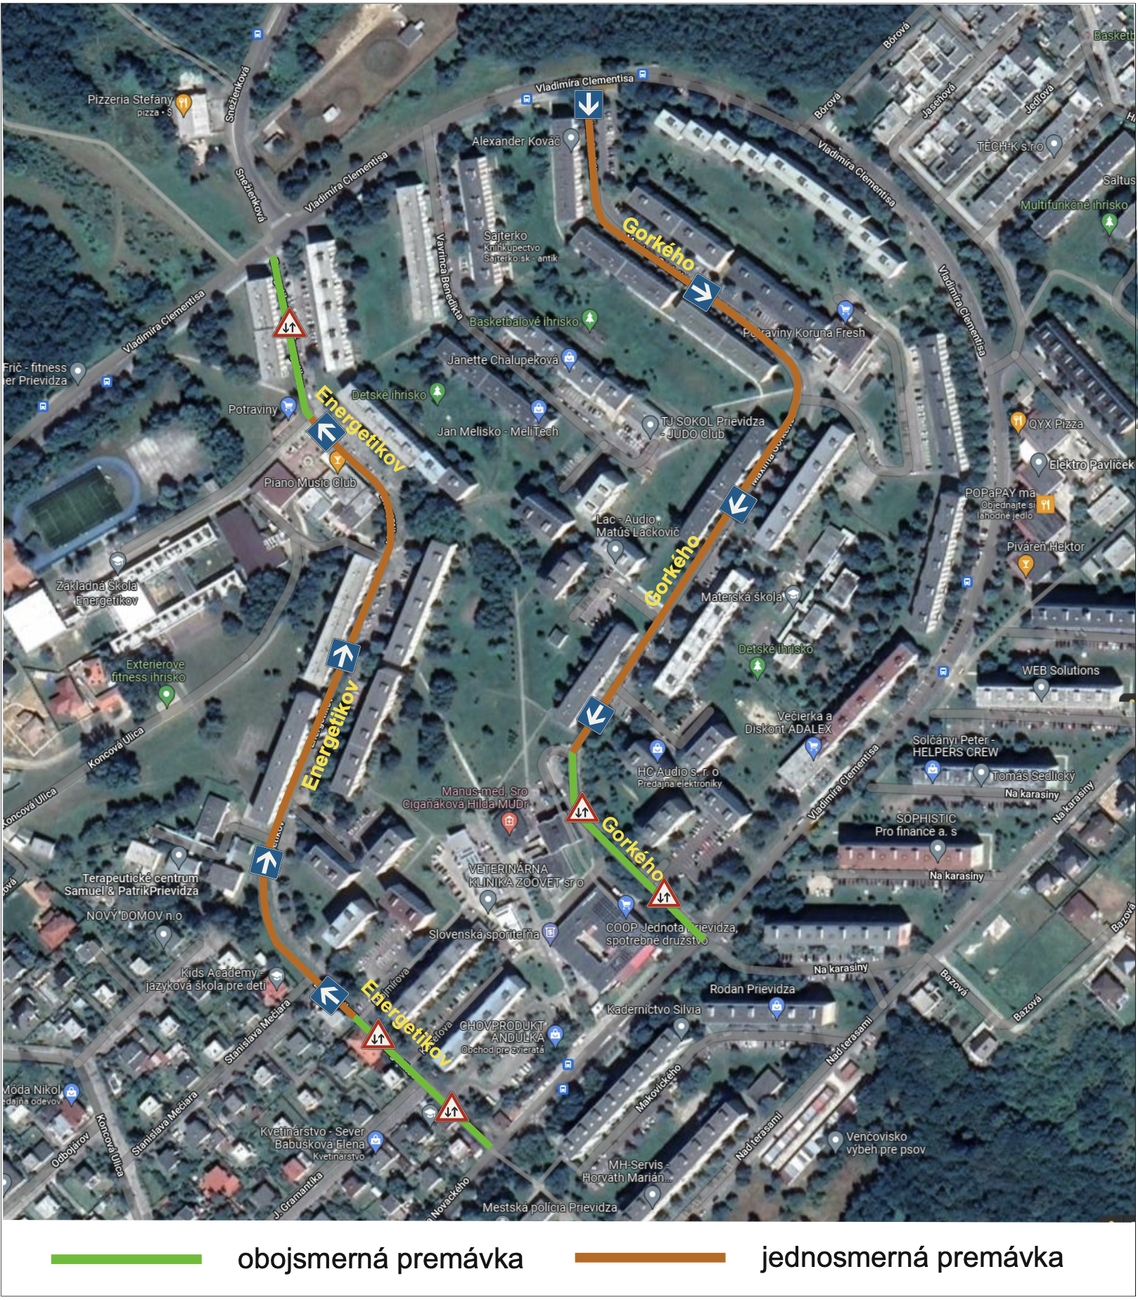 Zjednosmernenie miestnych komunikácií – Ulica M. Gorkého a Ulica energetikov v Prievidzi už v septembri